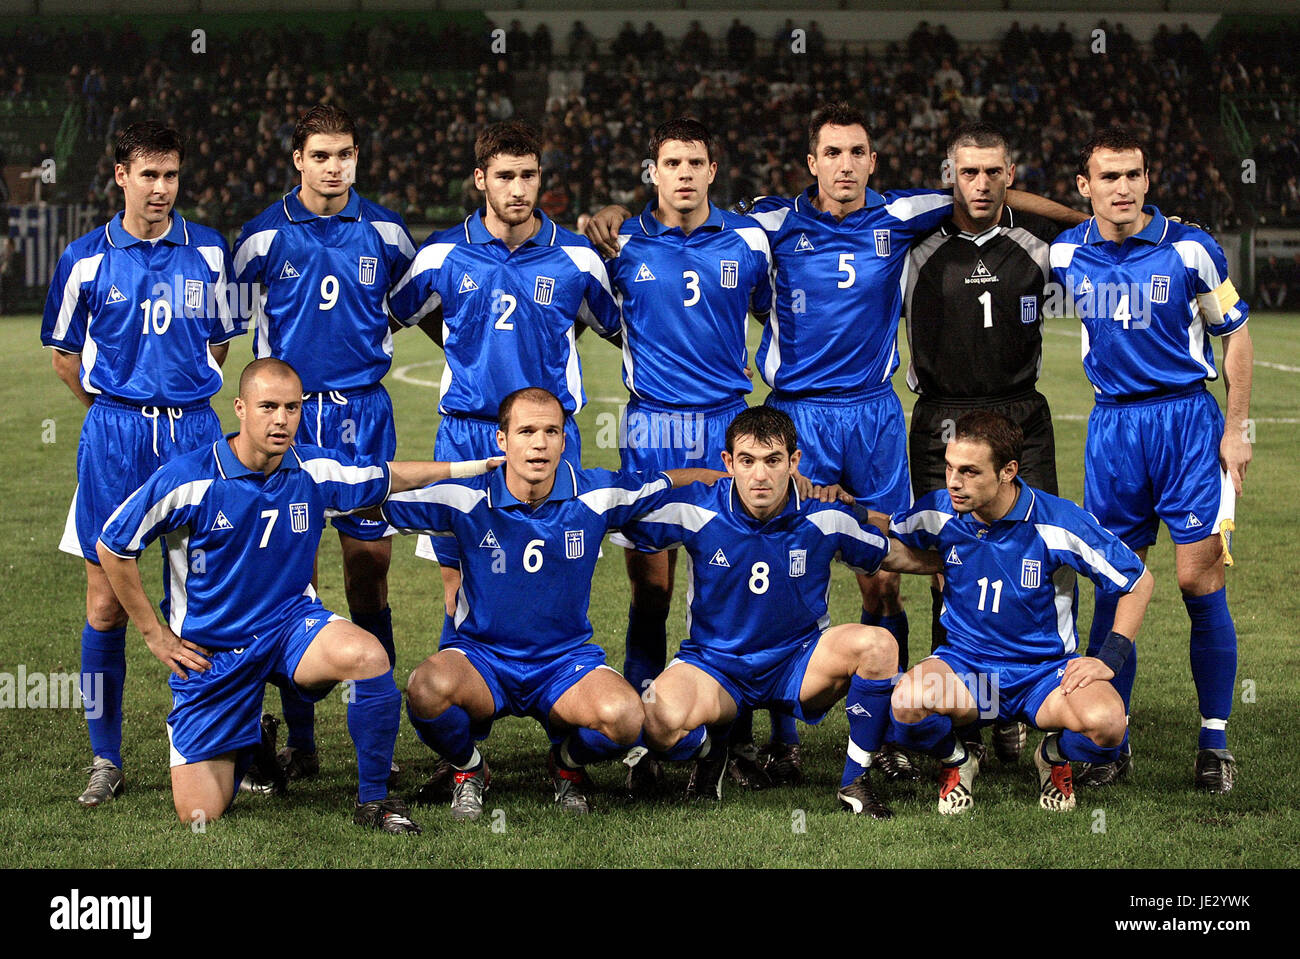 greece national football team jersey